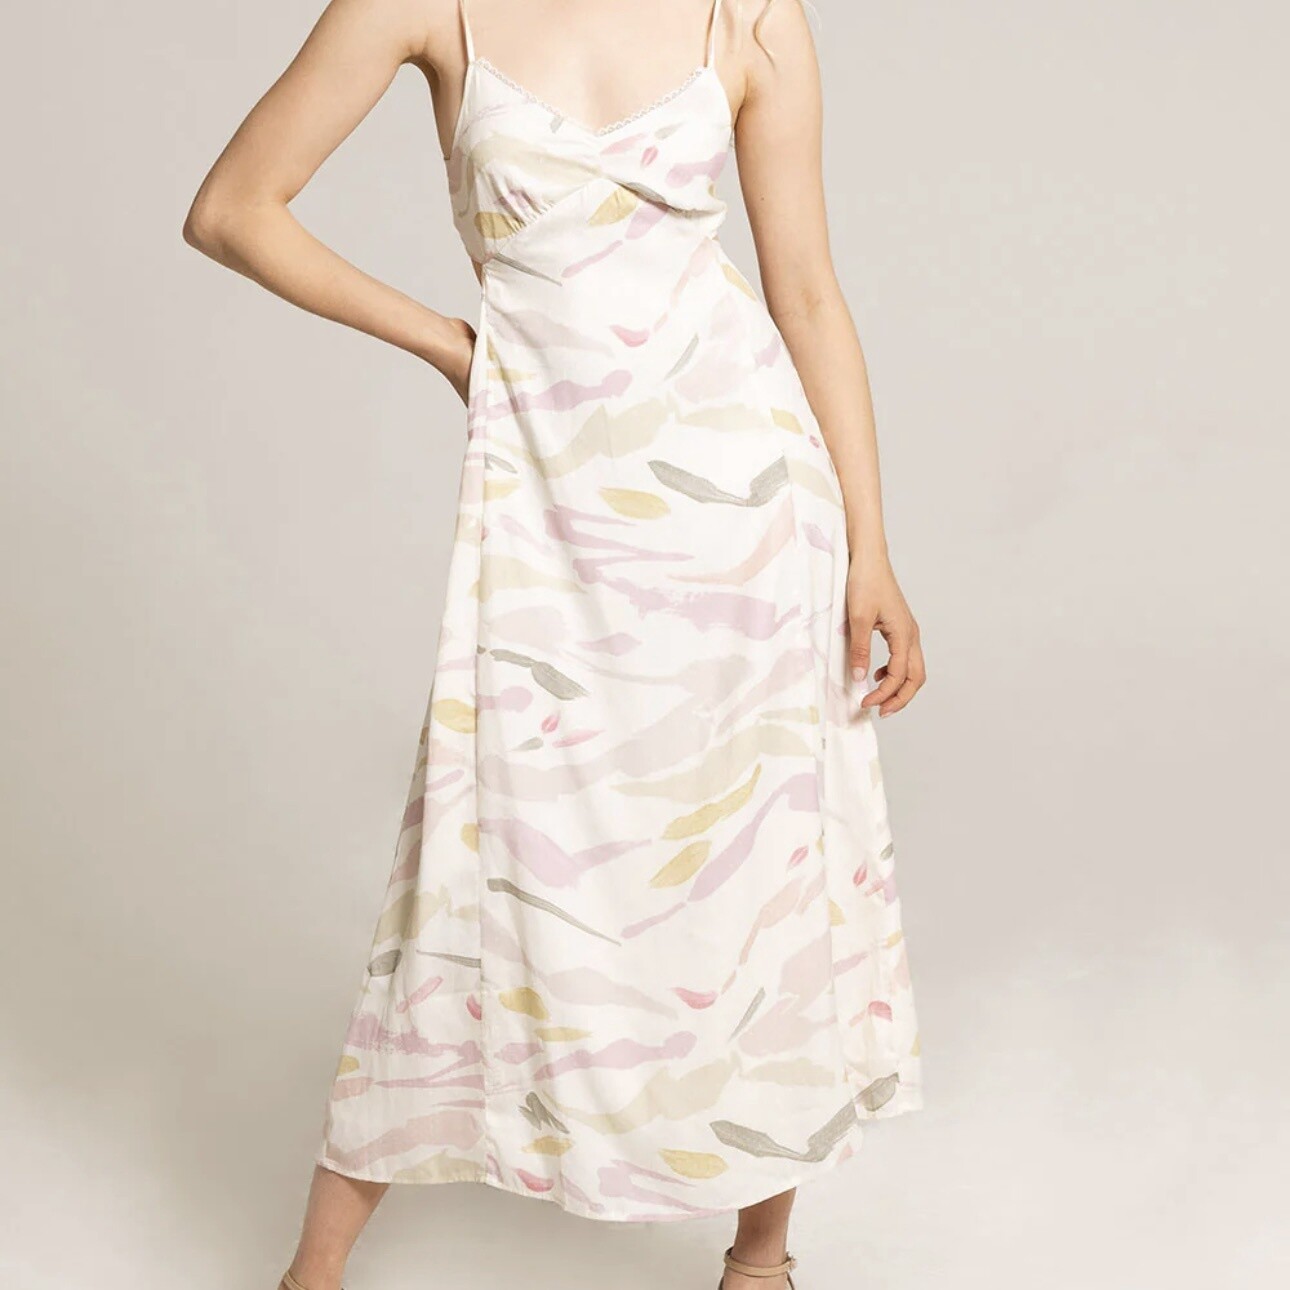 Saltwater Luxe Deniz Midi Dress